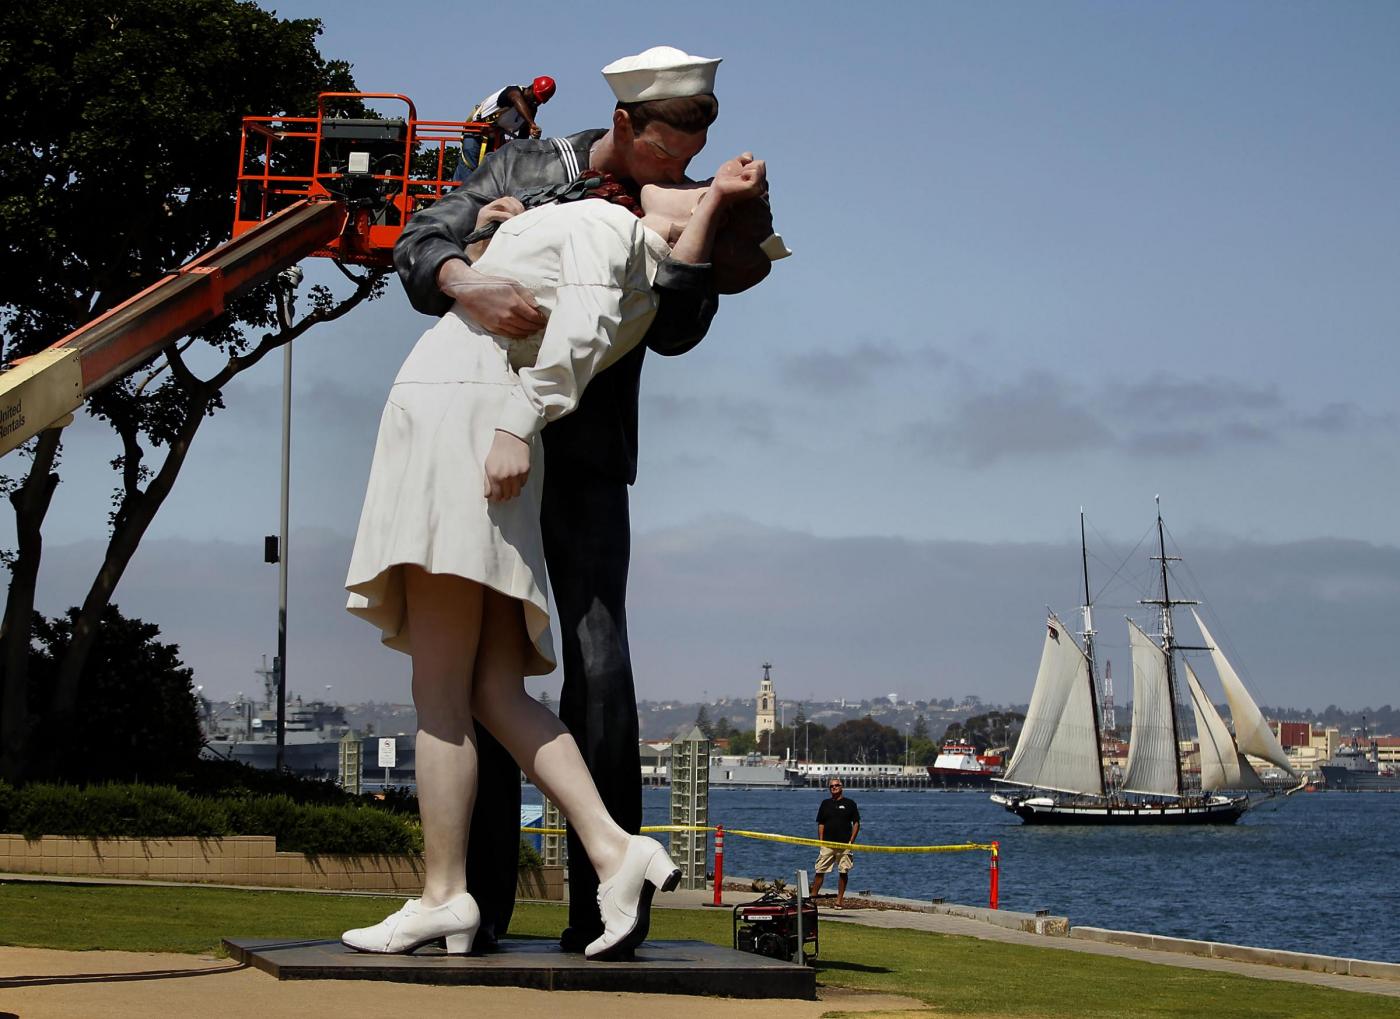 San Diego, smantellata la statua del bacio tra il marinaio e l'infermiera07